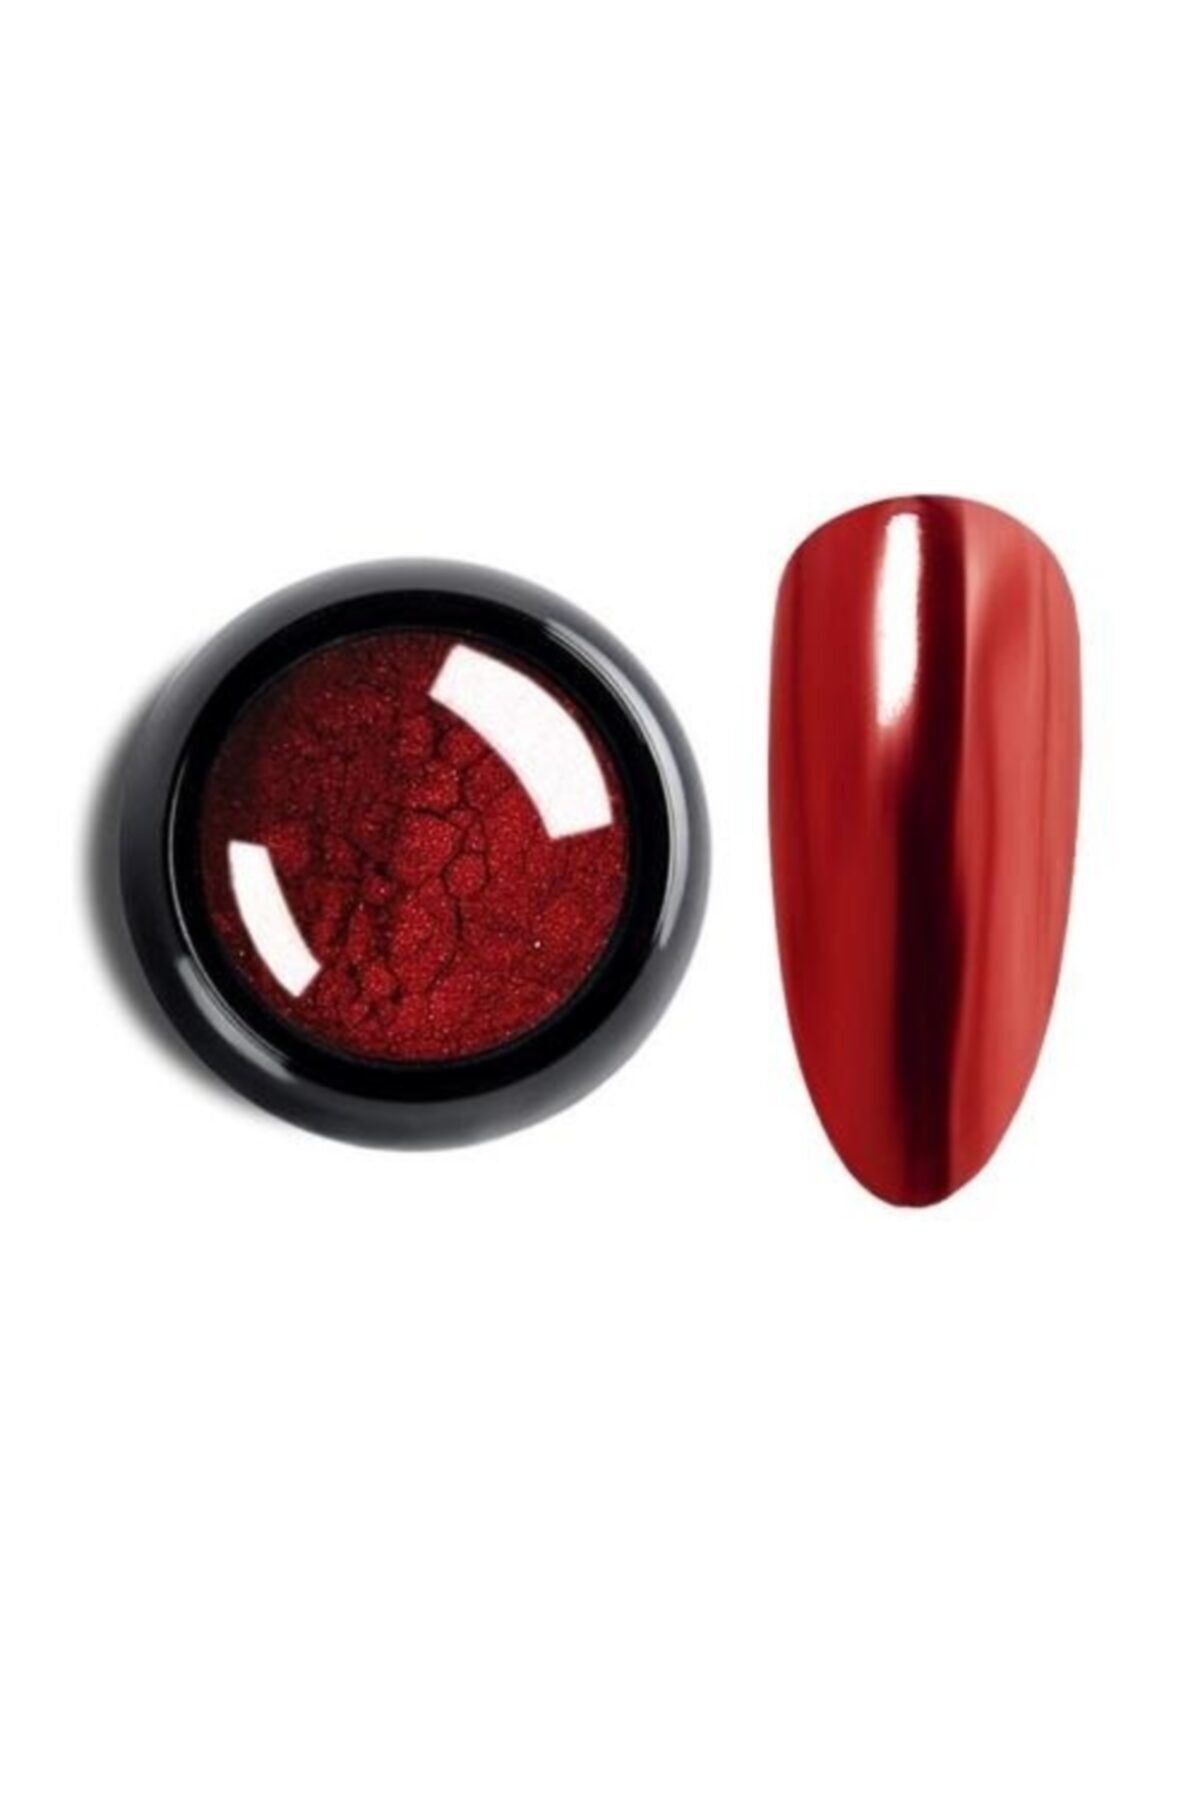 Venalisa F05 Kırmızı Ayna Tozu Nail Art Krom Tozu Mirror Powder